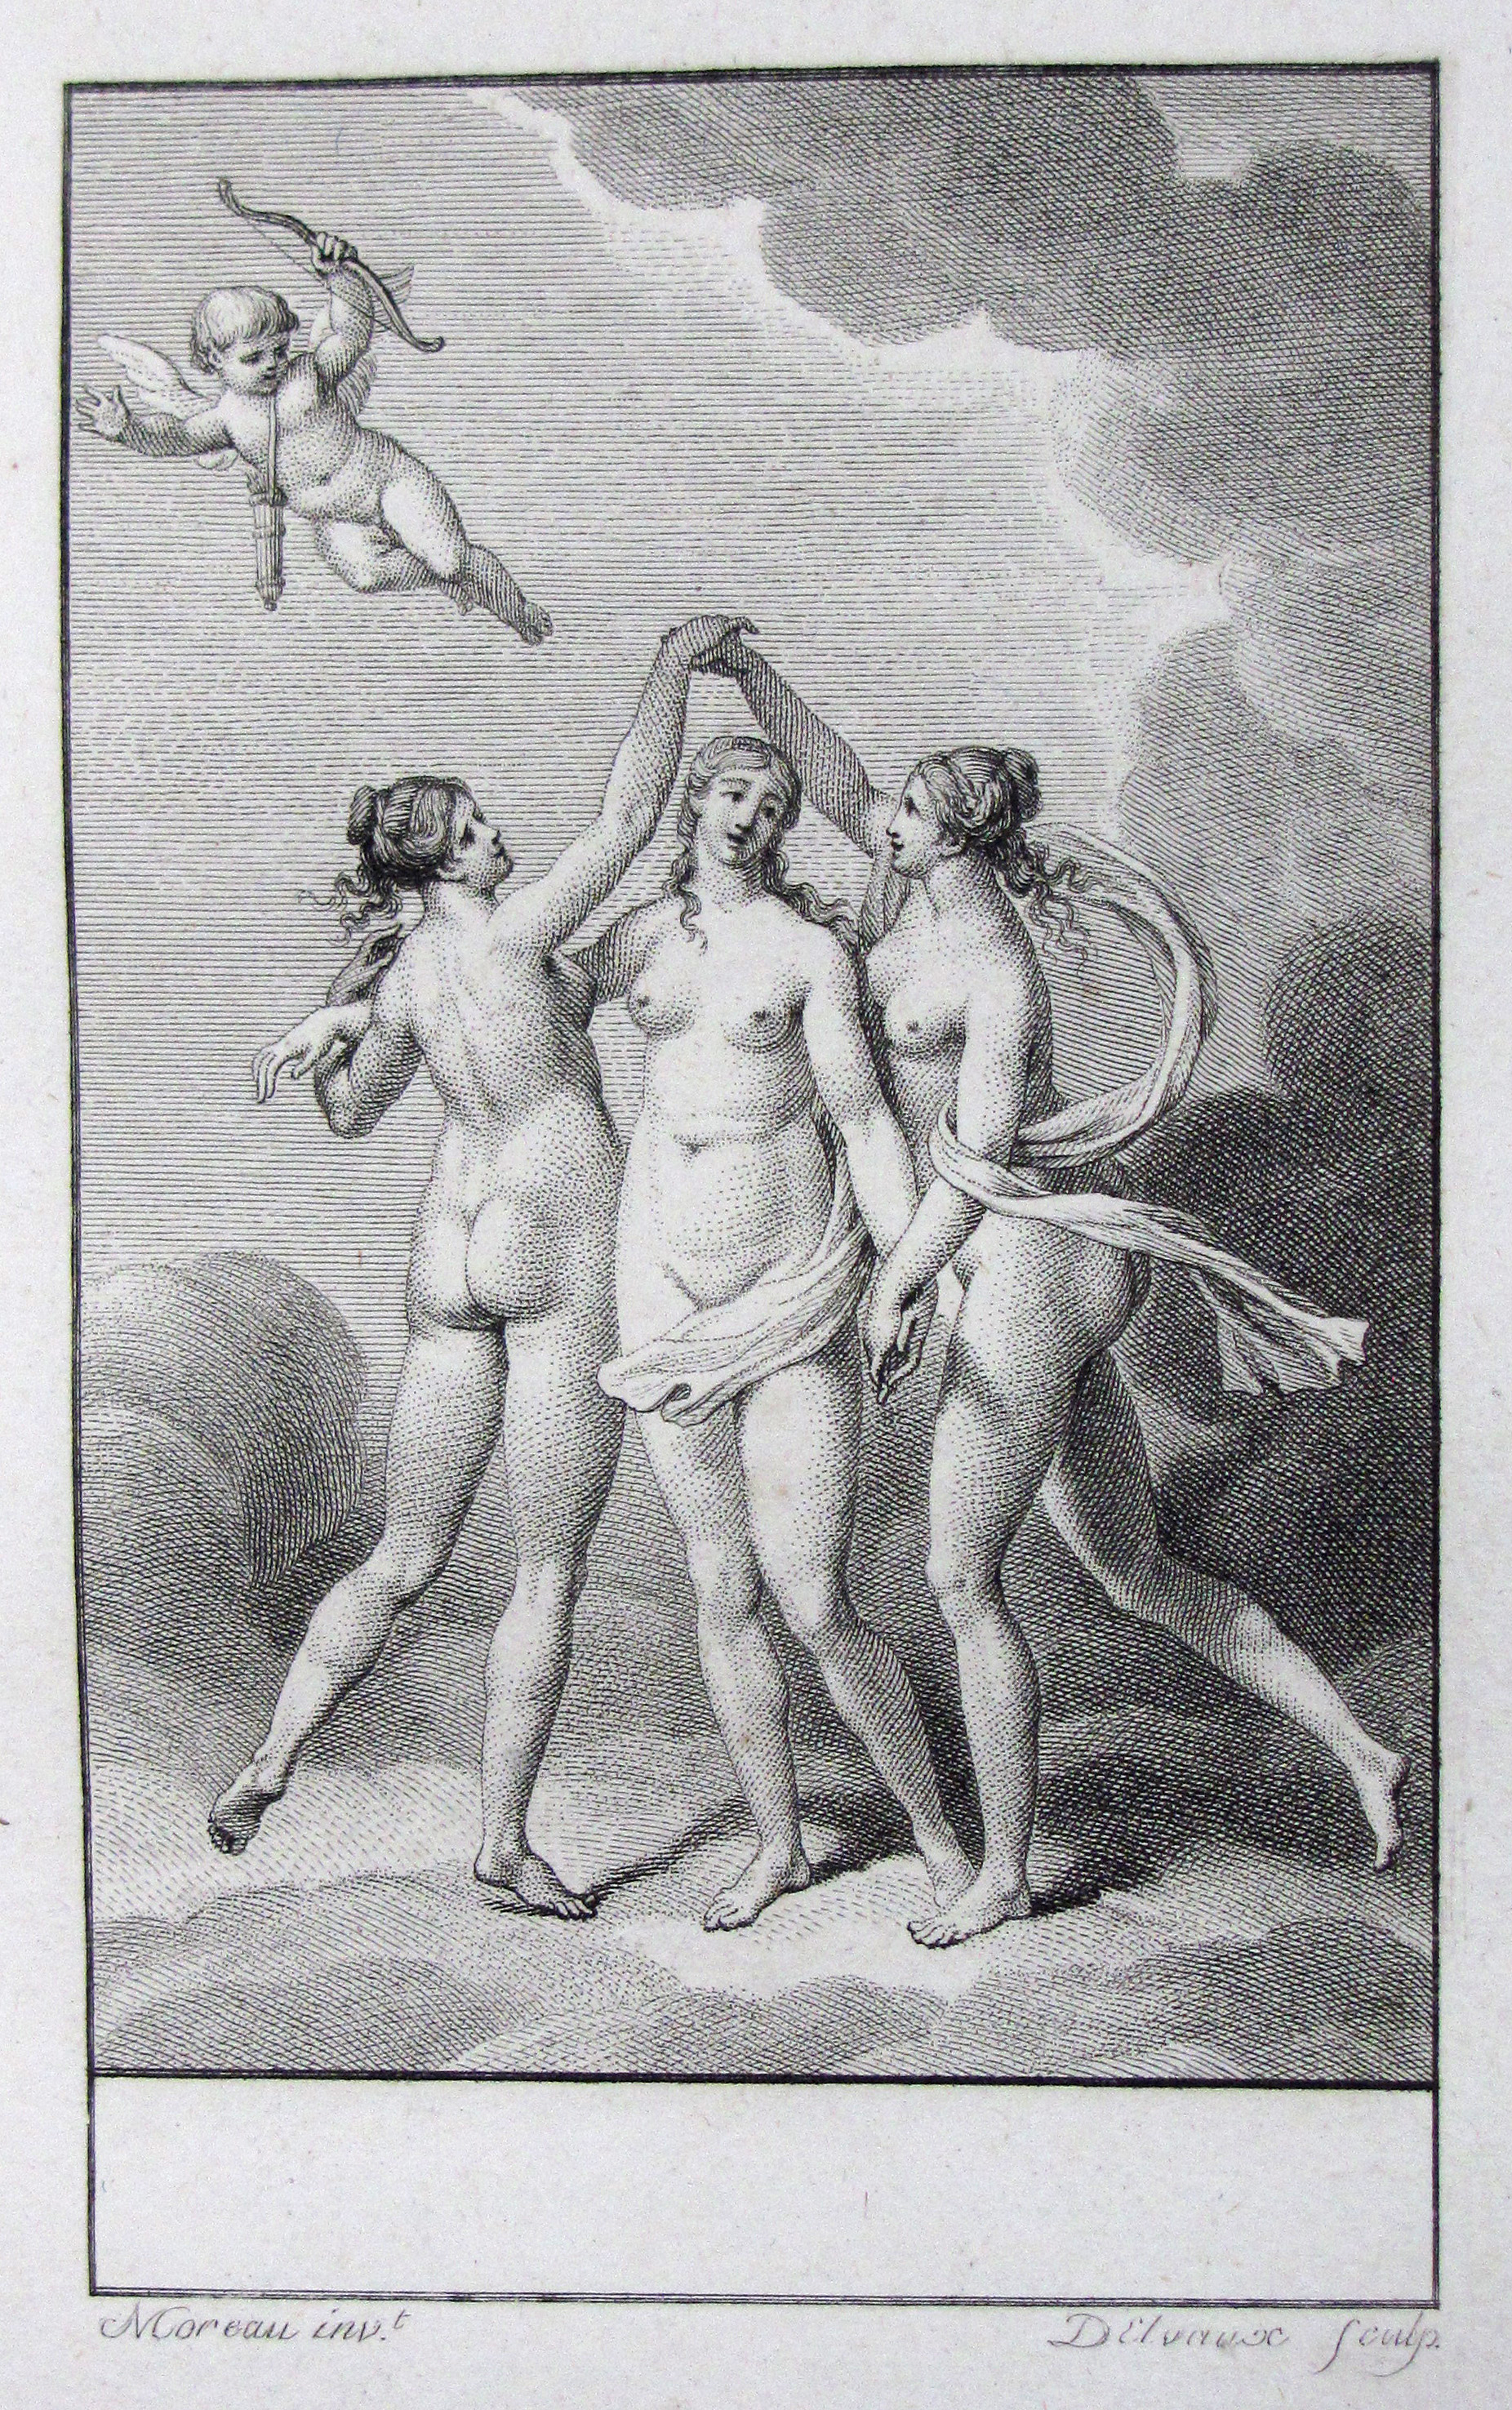 Demoustier, A., Lettres à Emile sur la mythologie.